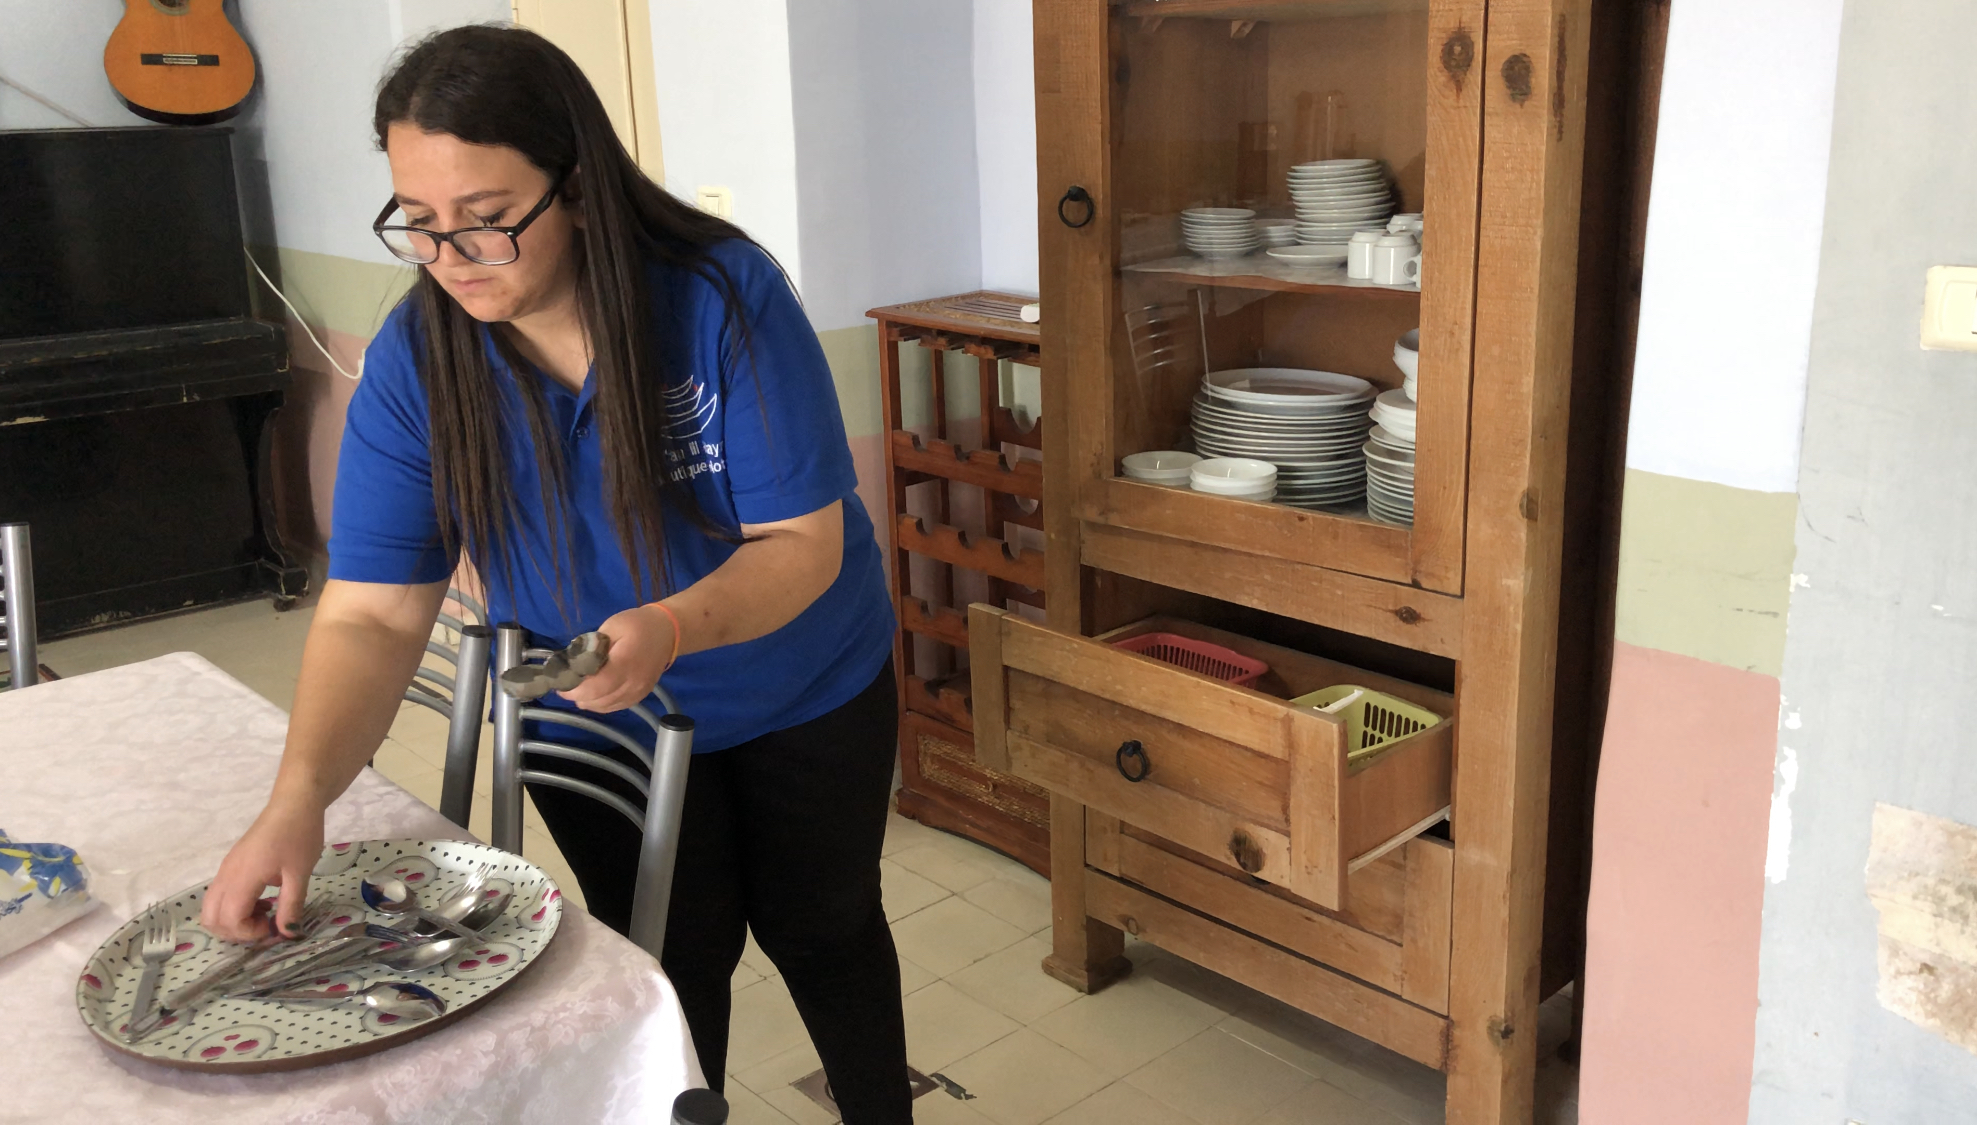 المهمة المسندة للشابة مريم كنسان، هي تنظيف الطاولة بعد أن ينتهي الزبائن من الإفطار